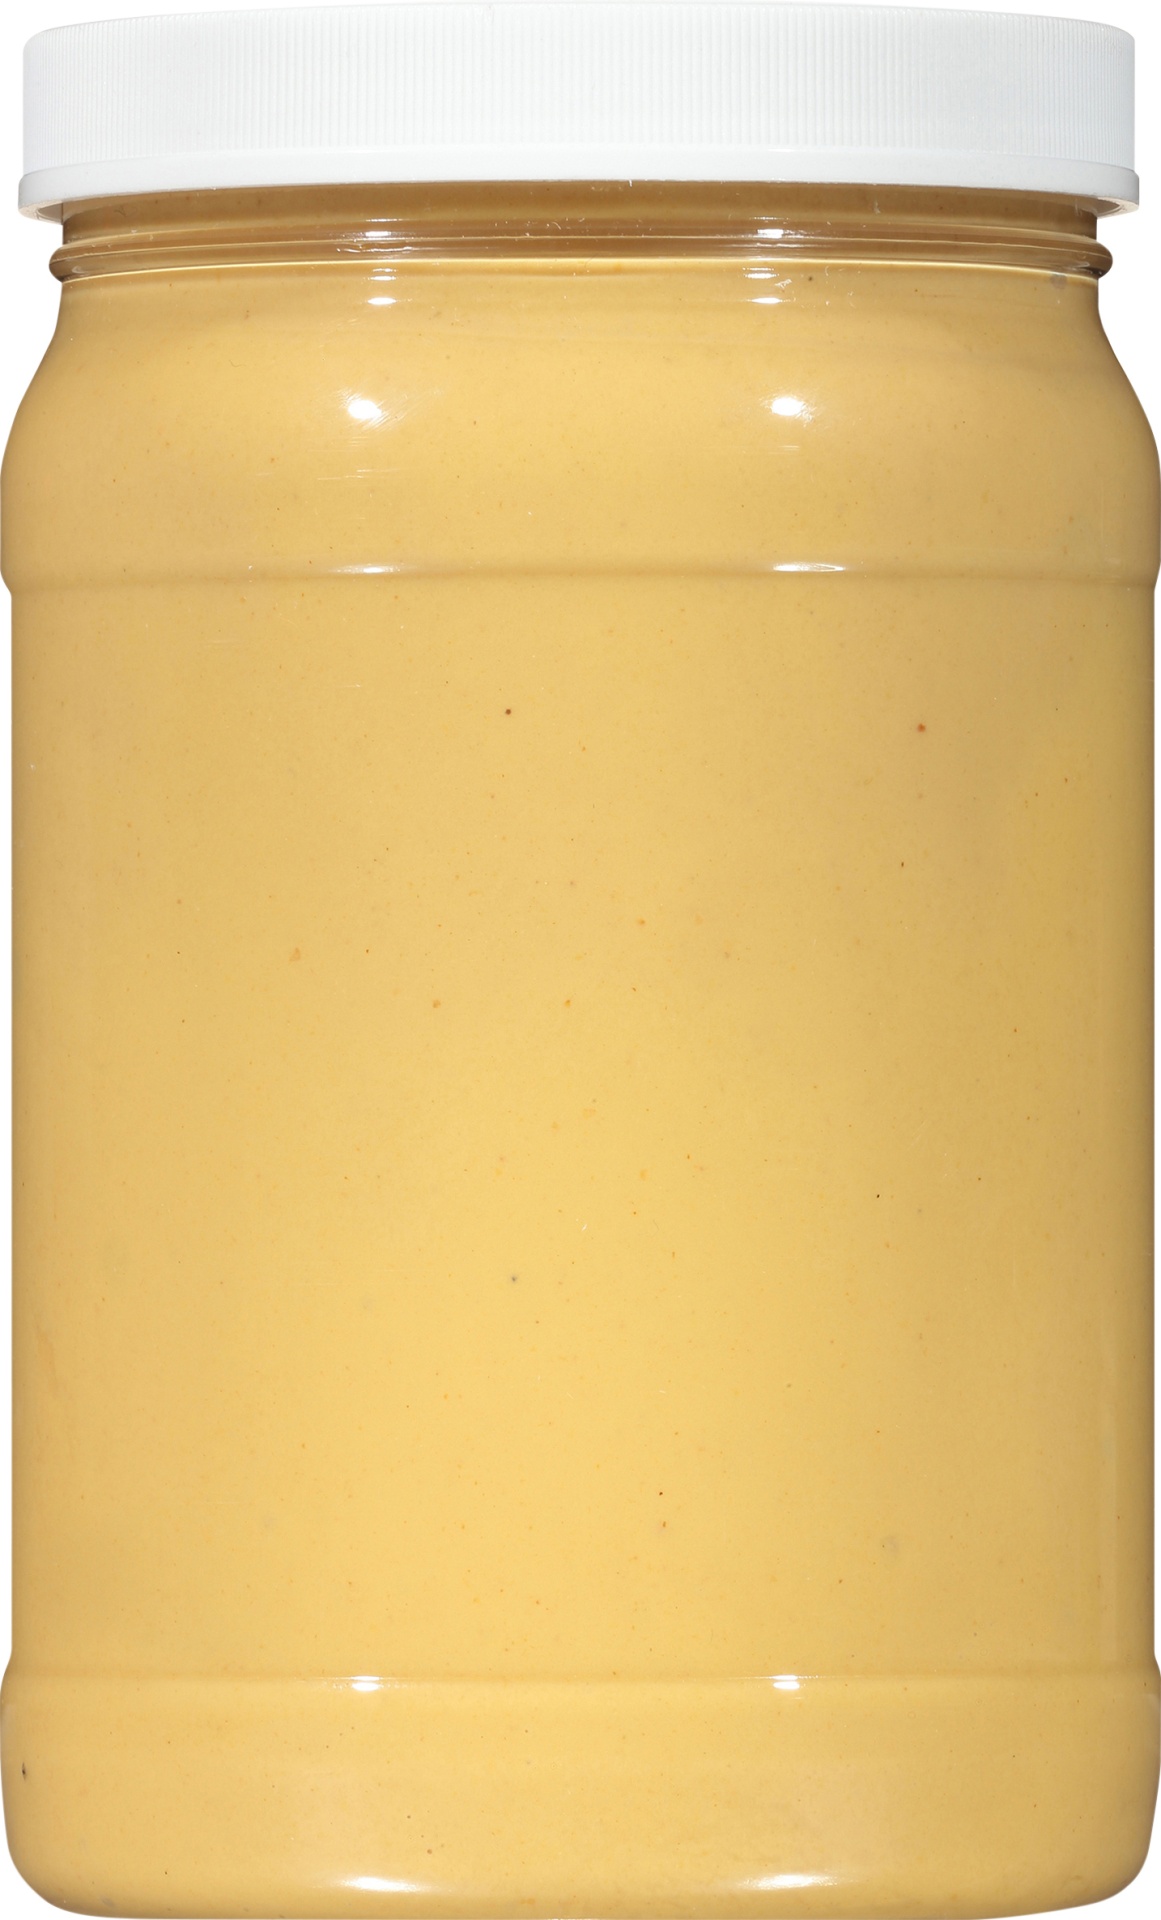 slide 4 of 6, French's Dijon Mustard, 32 oz